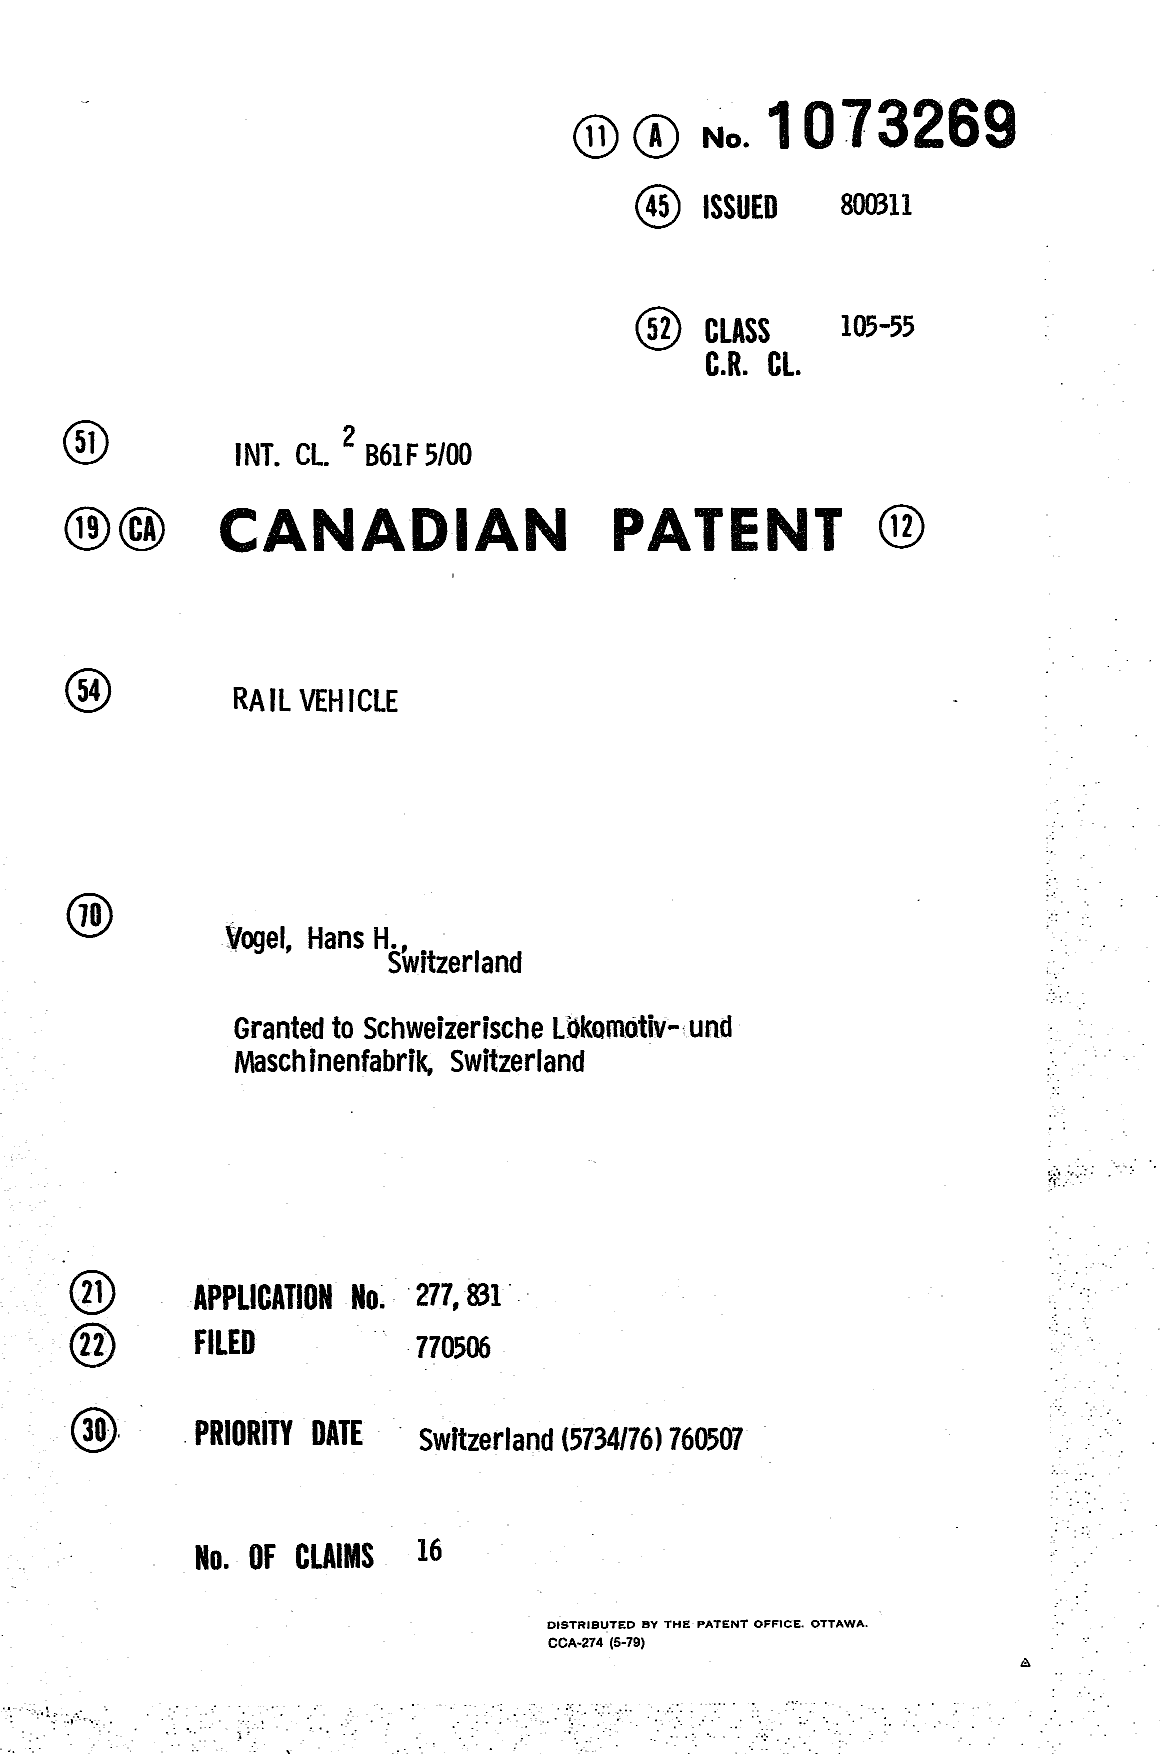 Document de brevet canadien 1073269. Page couverture 19940328. Image 1 de 1